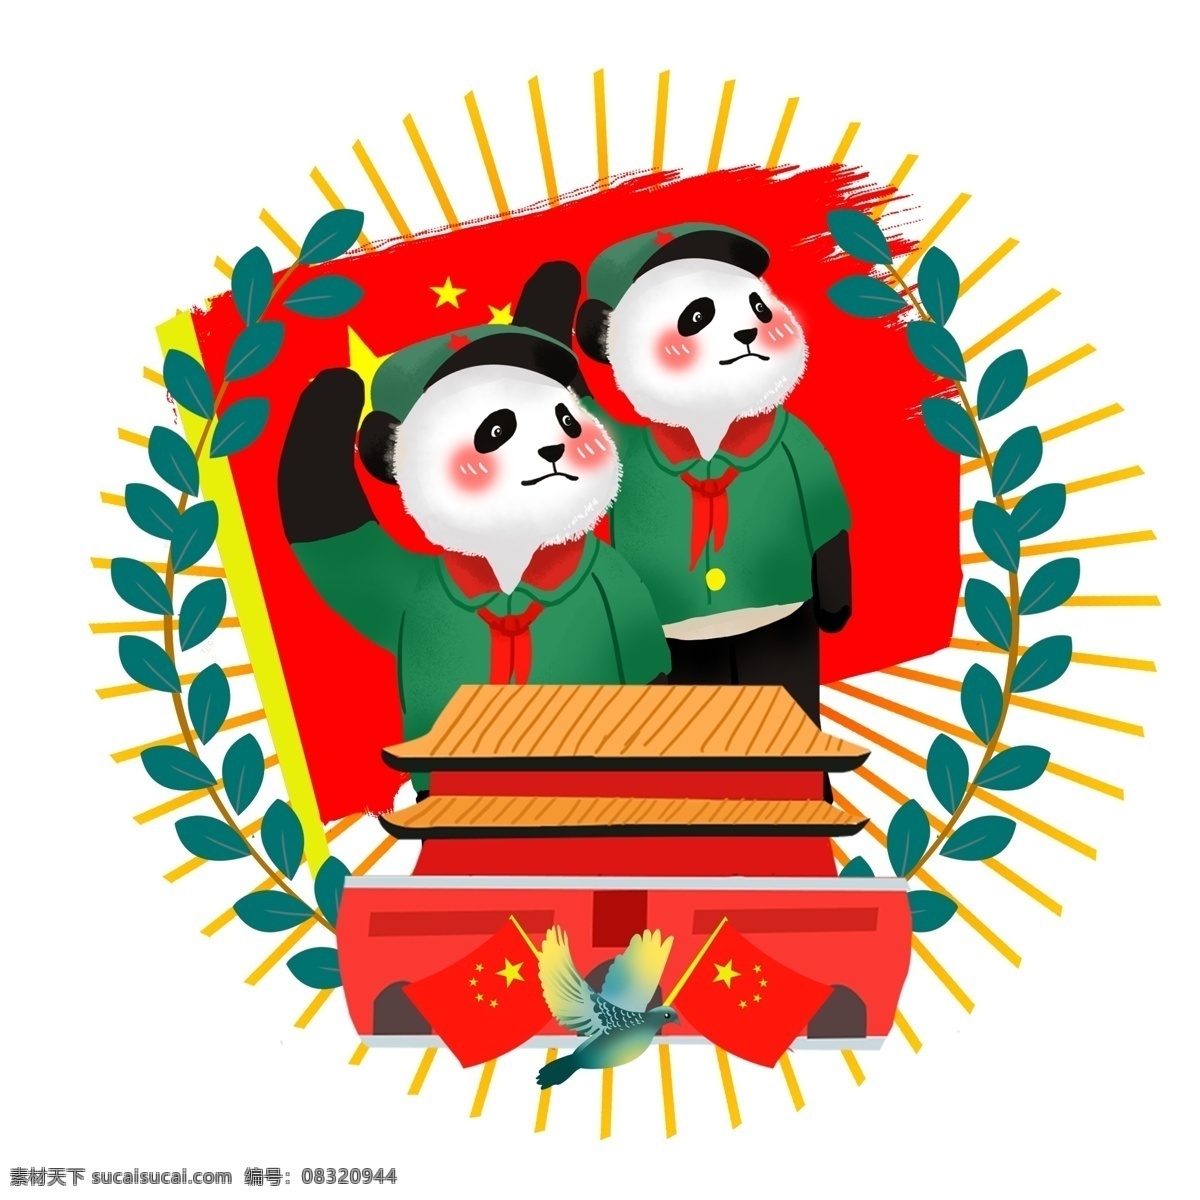 爱国 主题 熊猫 国旗 天安门 和平鸽 树叶 场景 红领巾